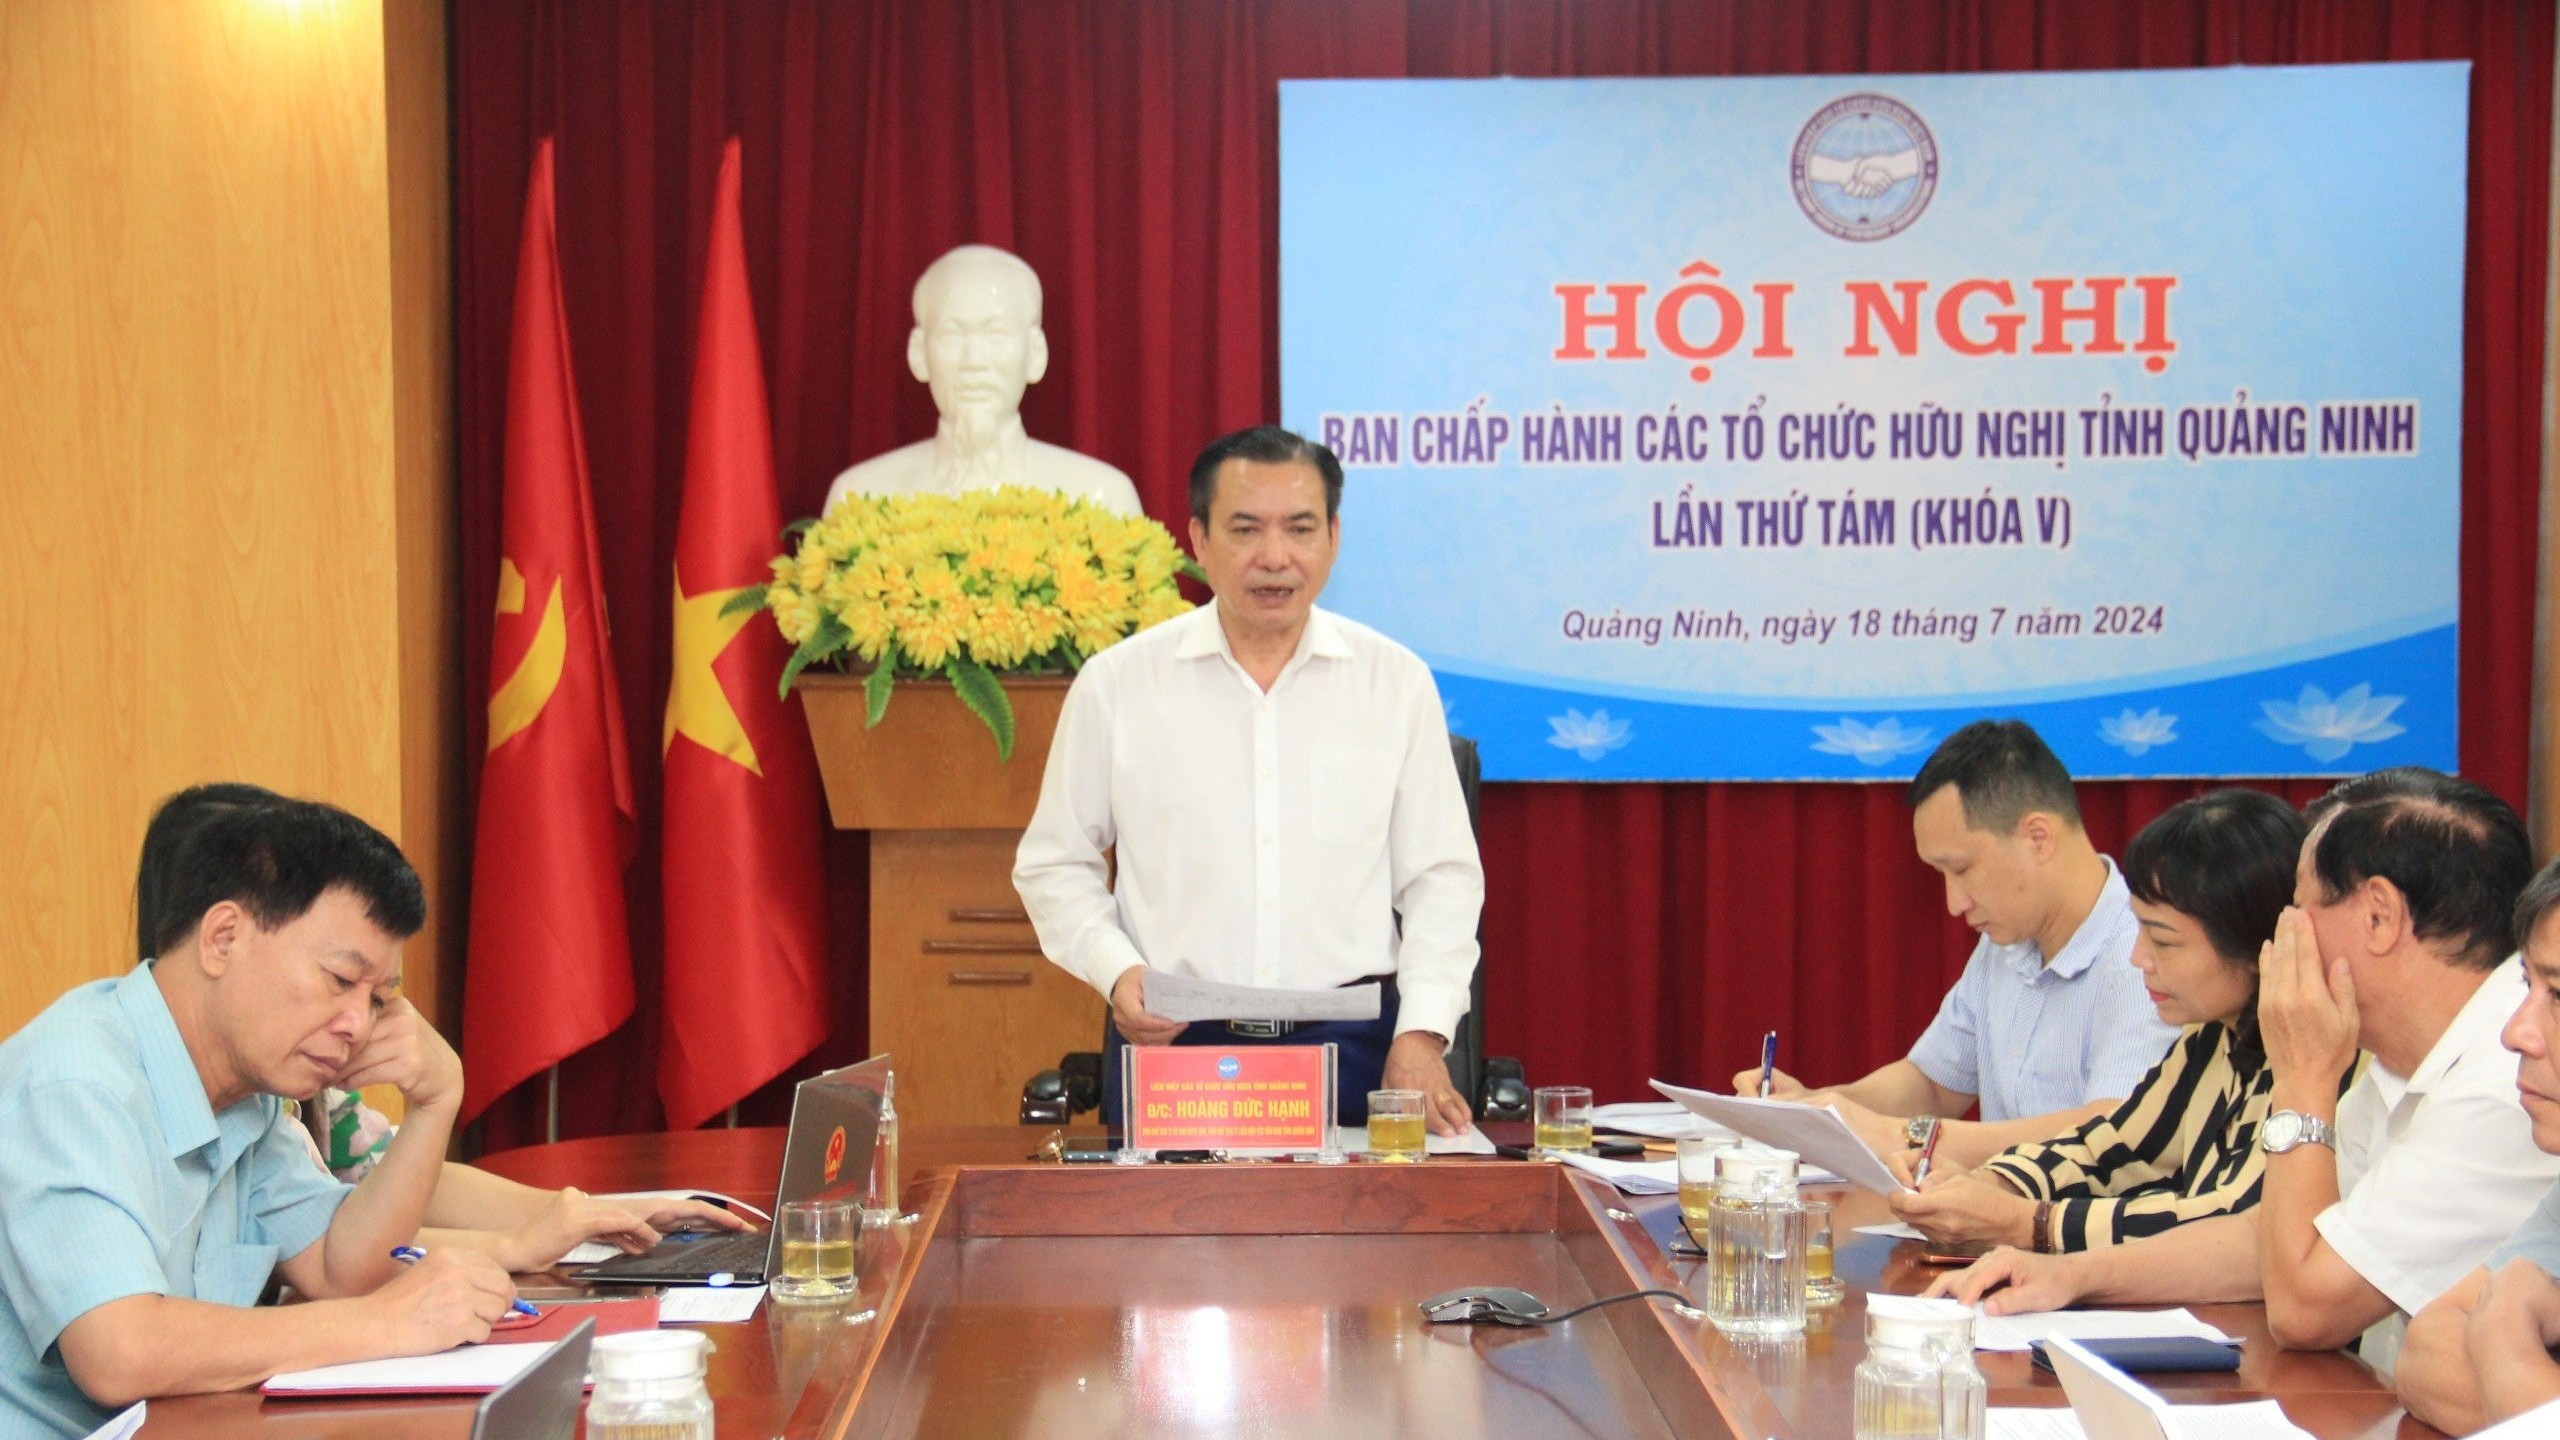 Liên hiệp các tổ chức hữu nghị tỉnh Quảng Ninh: Tập trung cho nhiều sự kiện lớn 6 tháng cuối năm